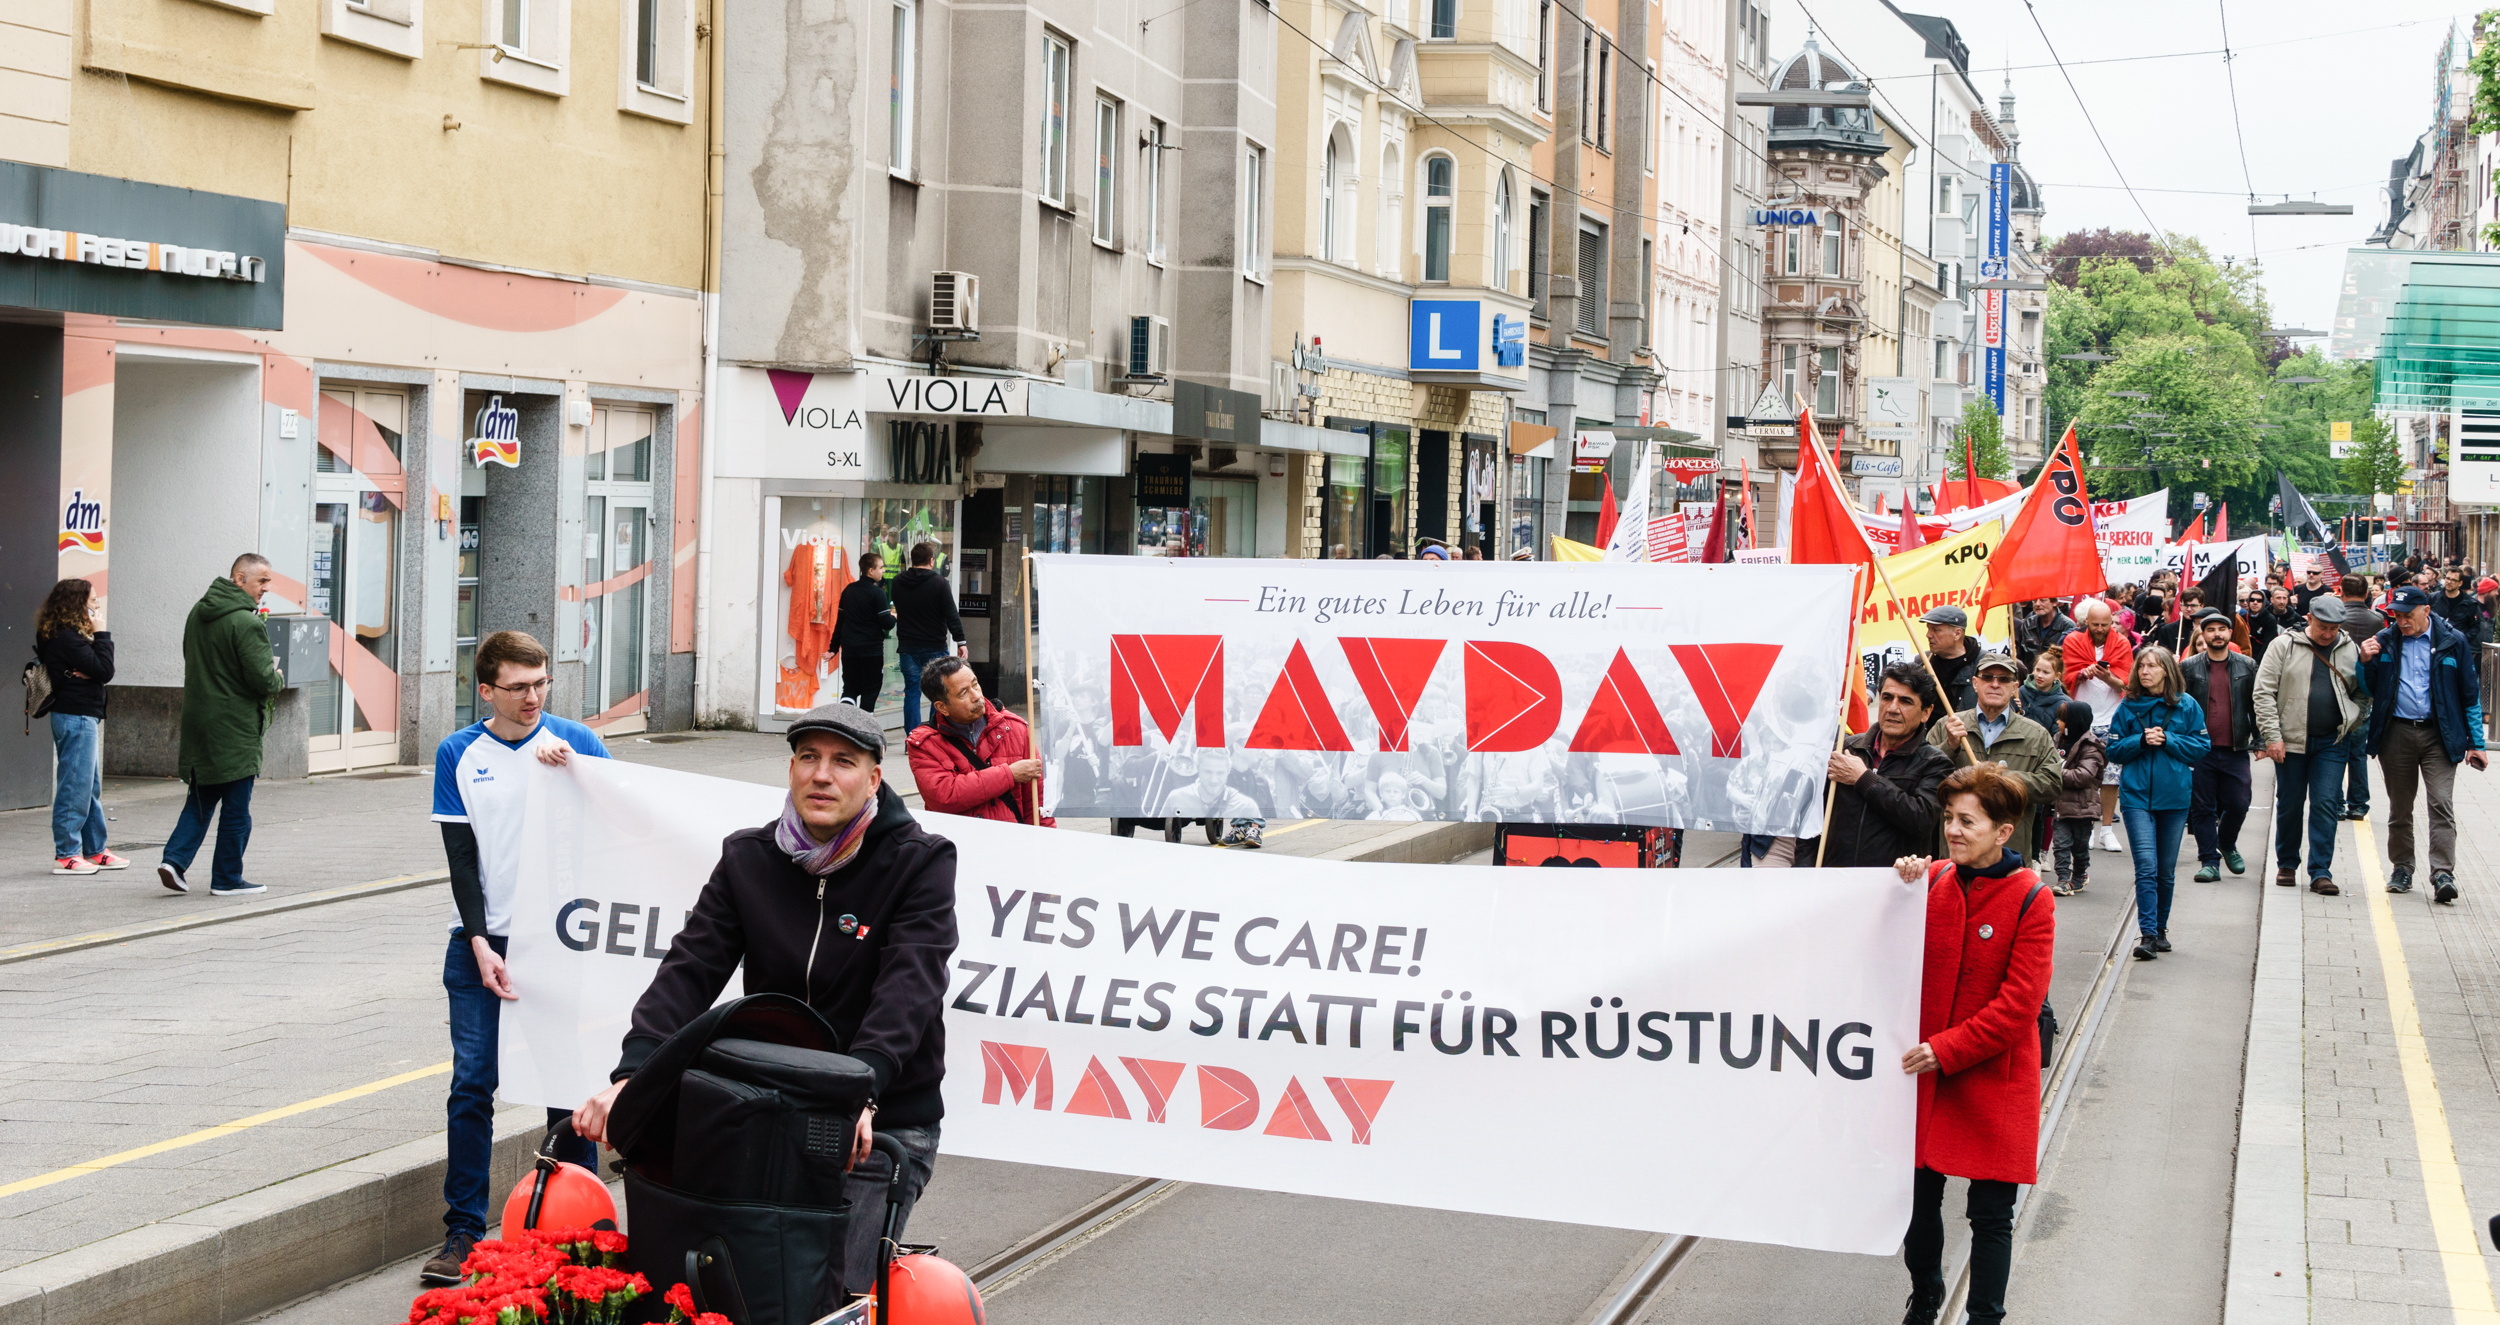 Mayday 2022: Yes we care! Geld für Soziales statt für Rüstung